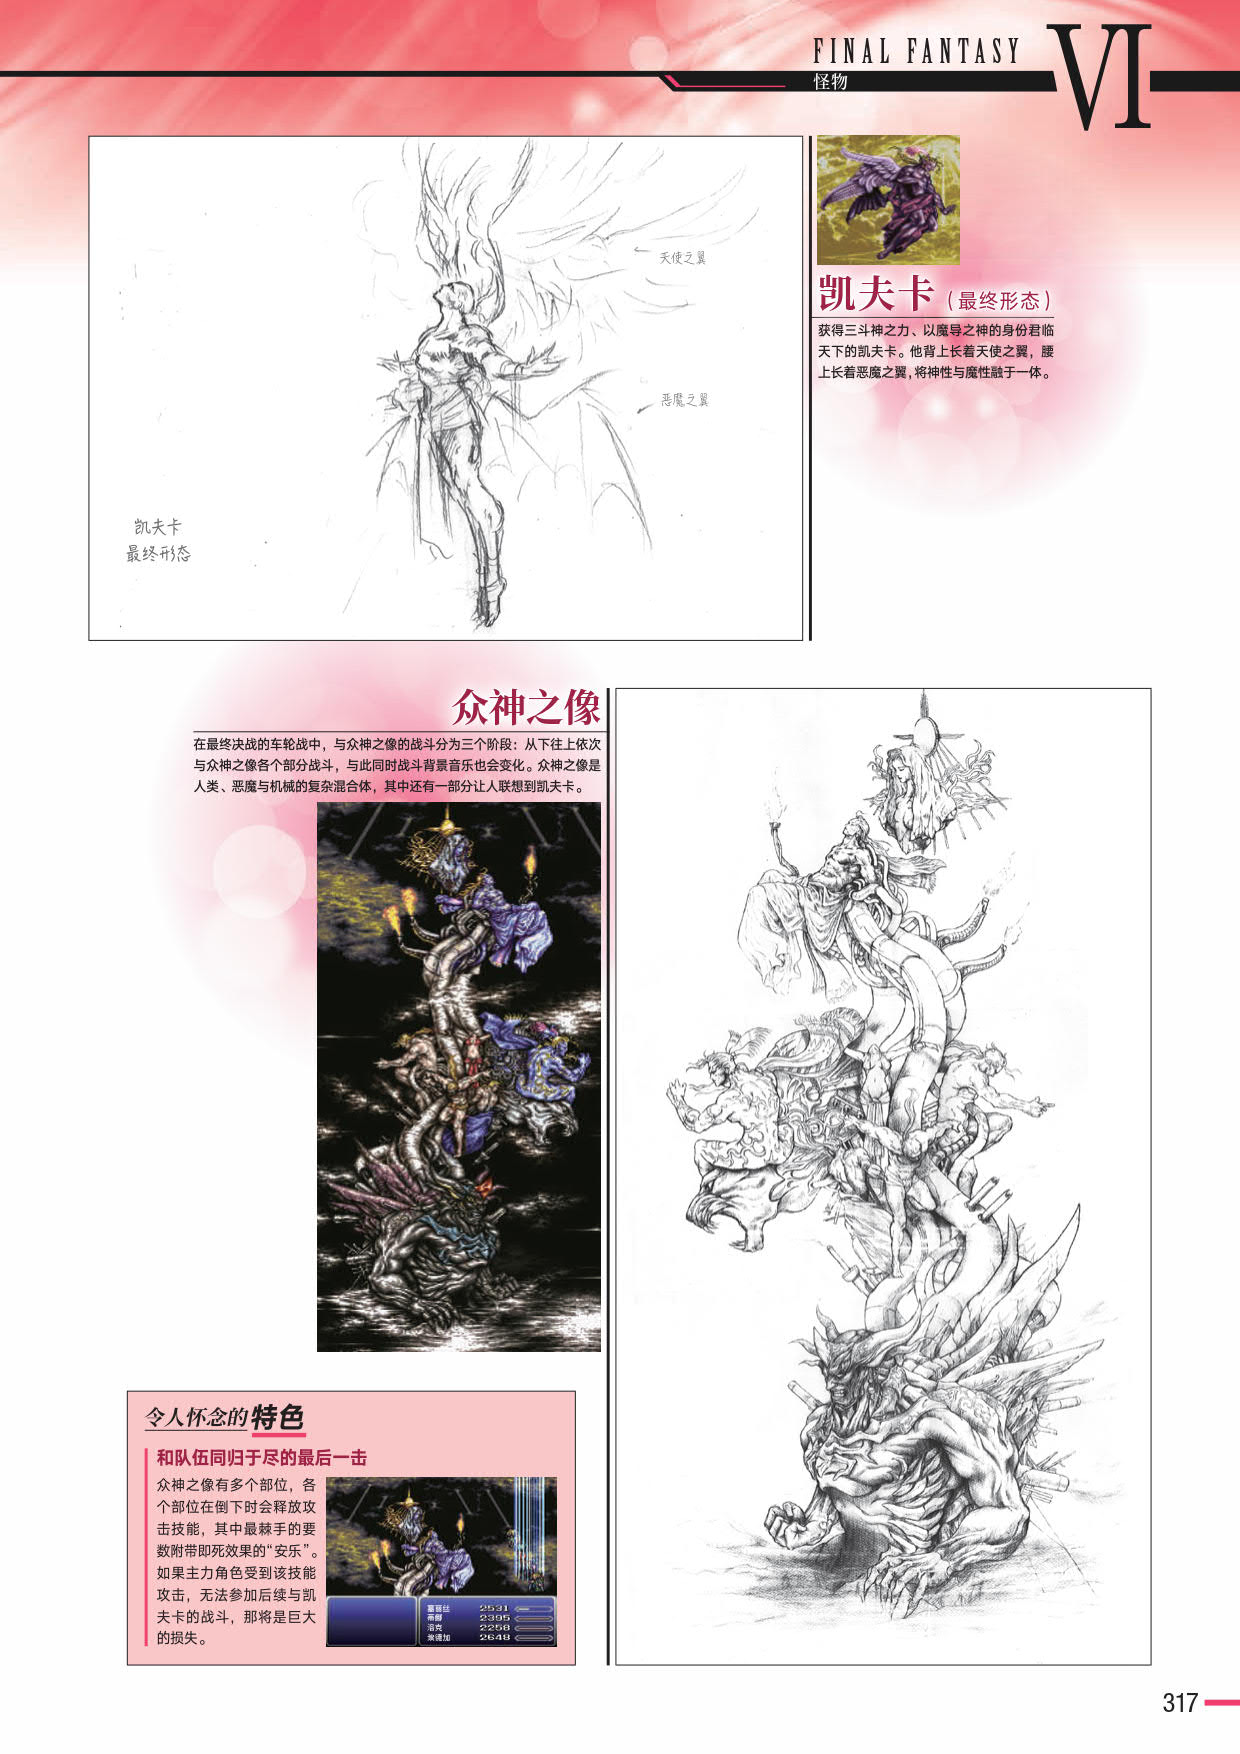 野村哲也绘制的《最终幻想VI》的凯夫卡与众神之像